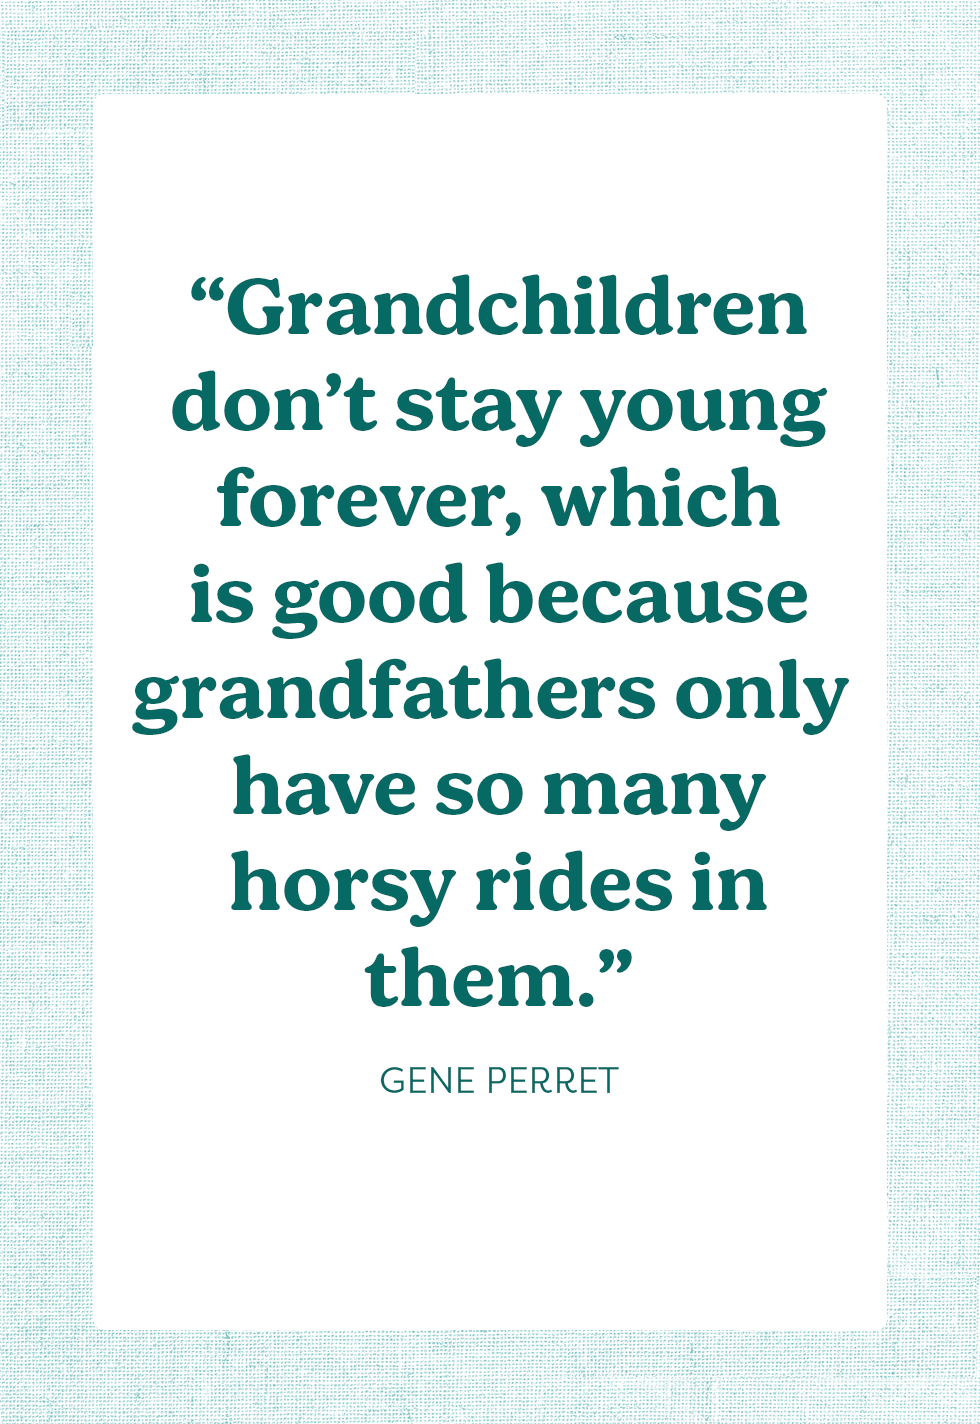 best grandpa quotes